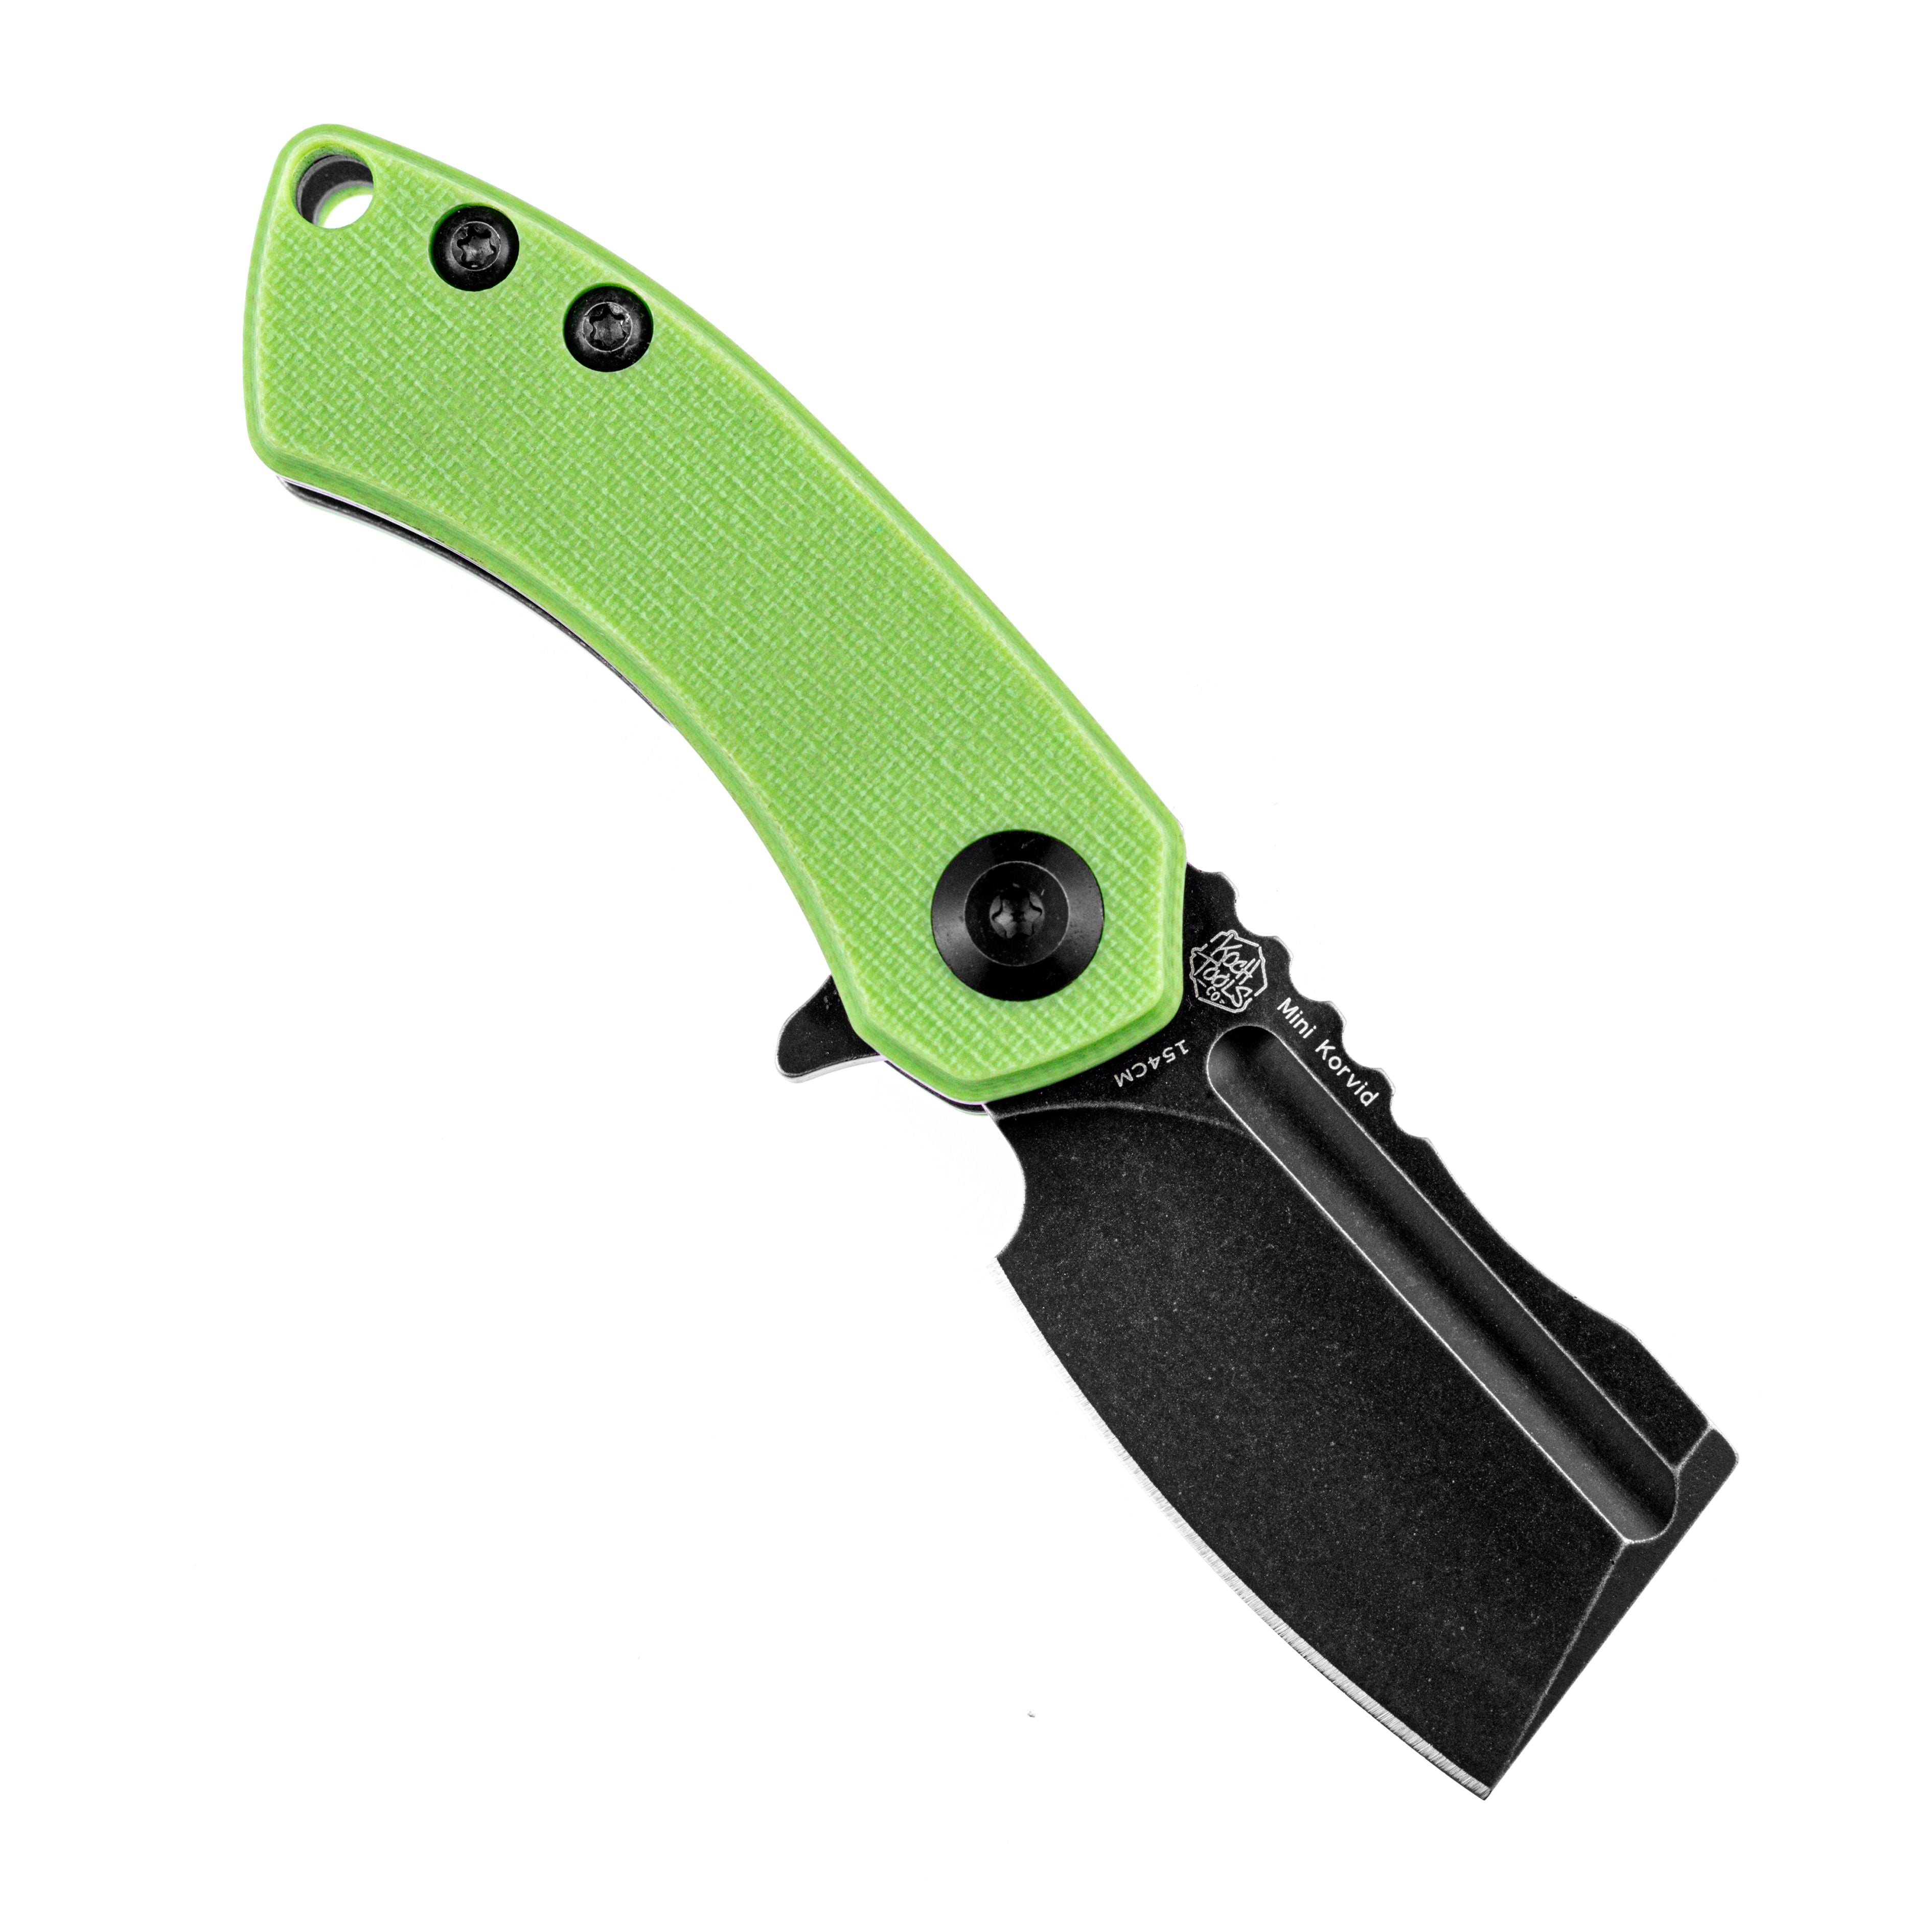 Kansept 刀具 T3030A8 迷你 Korvid 154 厘米刀片绿色 G10 手柄内衬锁 Edc 刀具